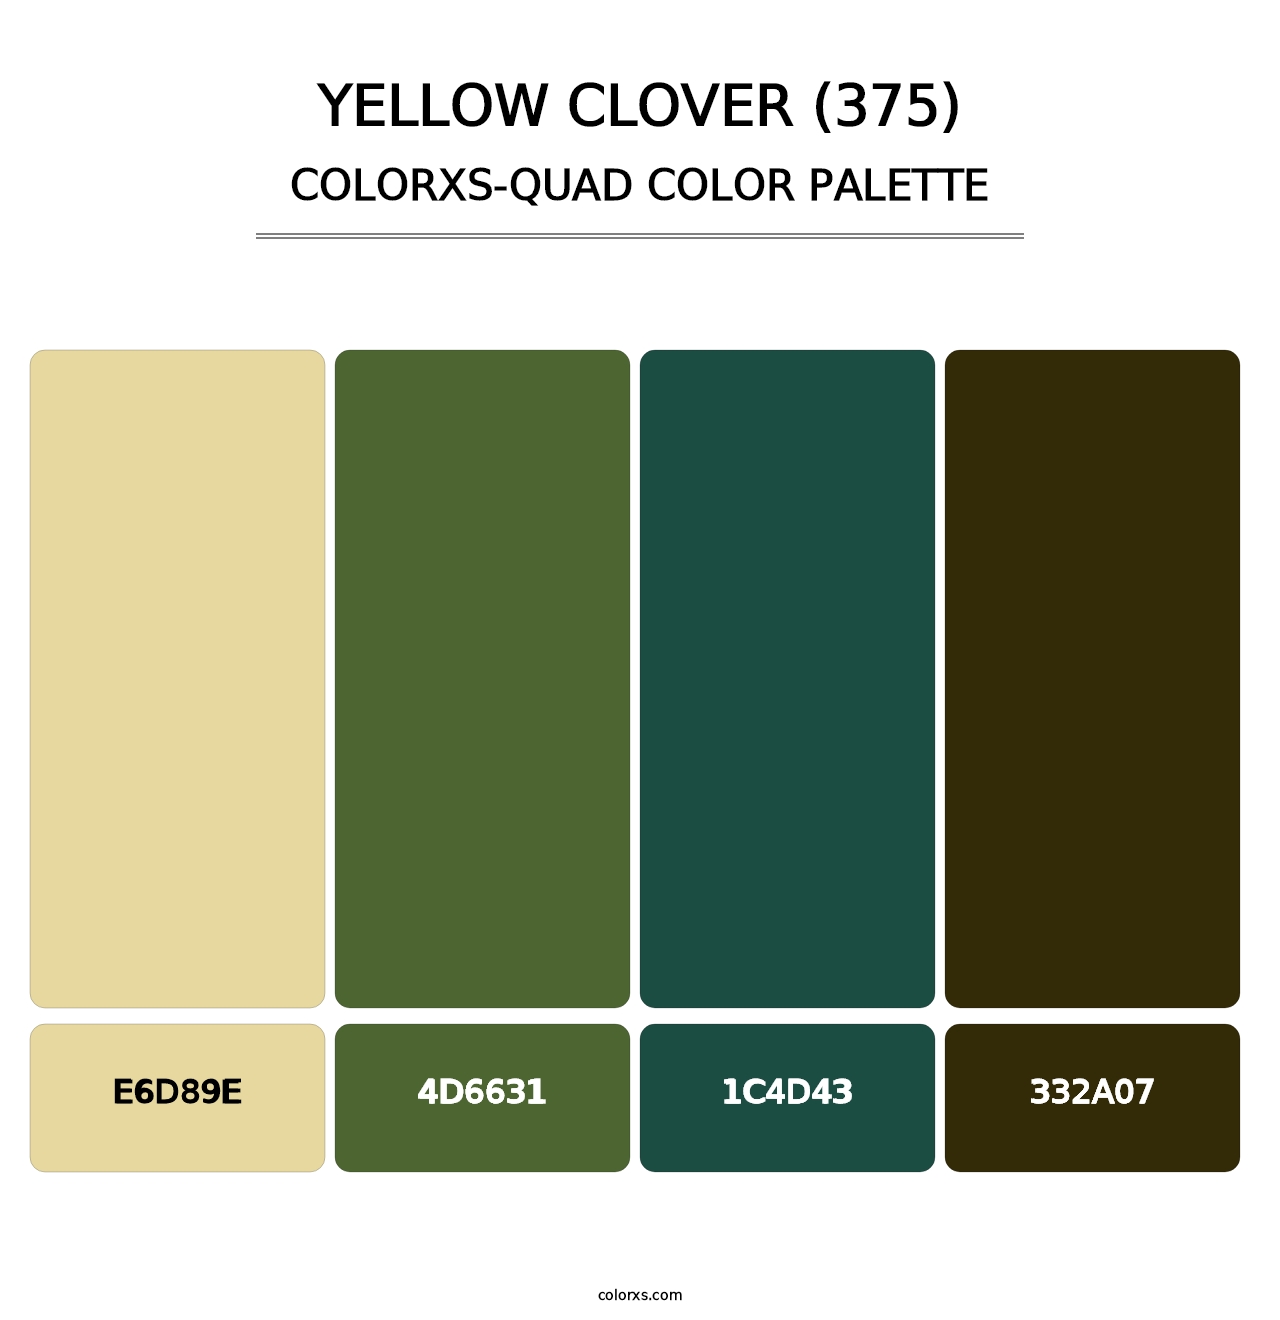 Yellow Clover (375) - Colorxs Quad Palette